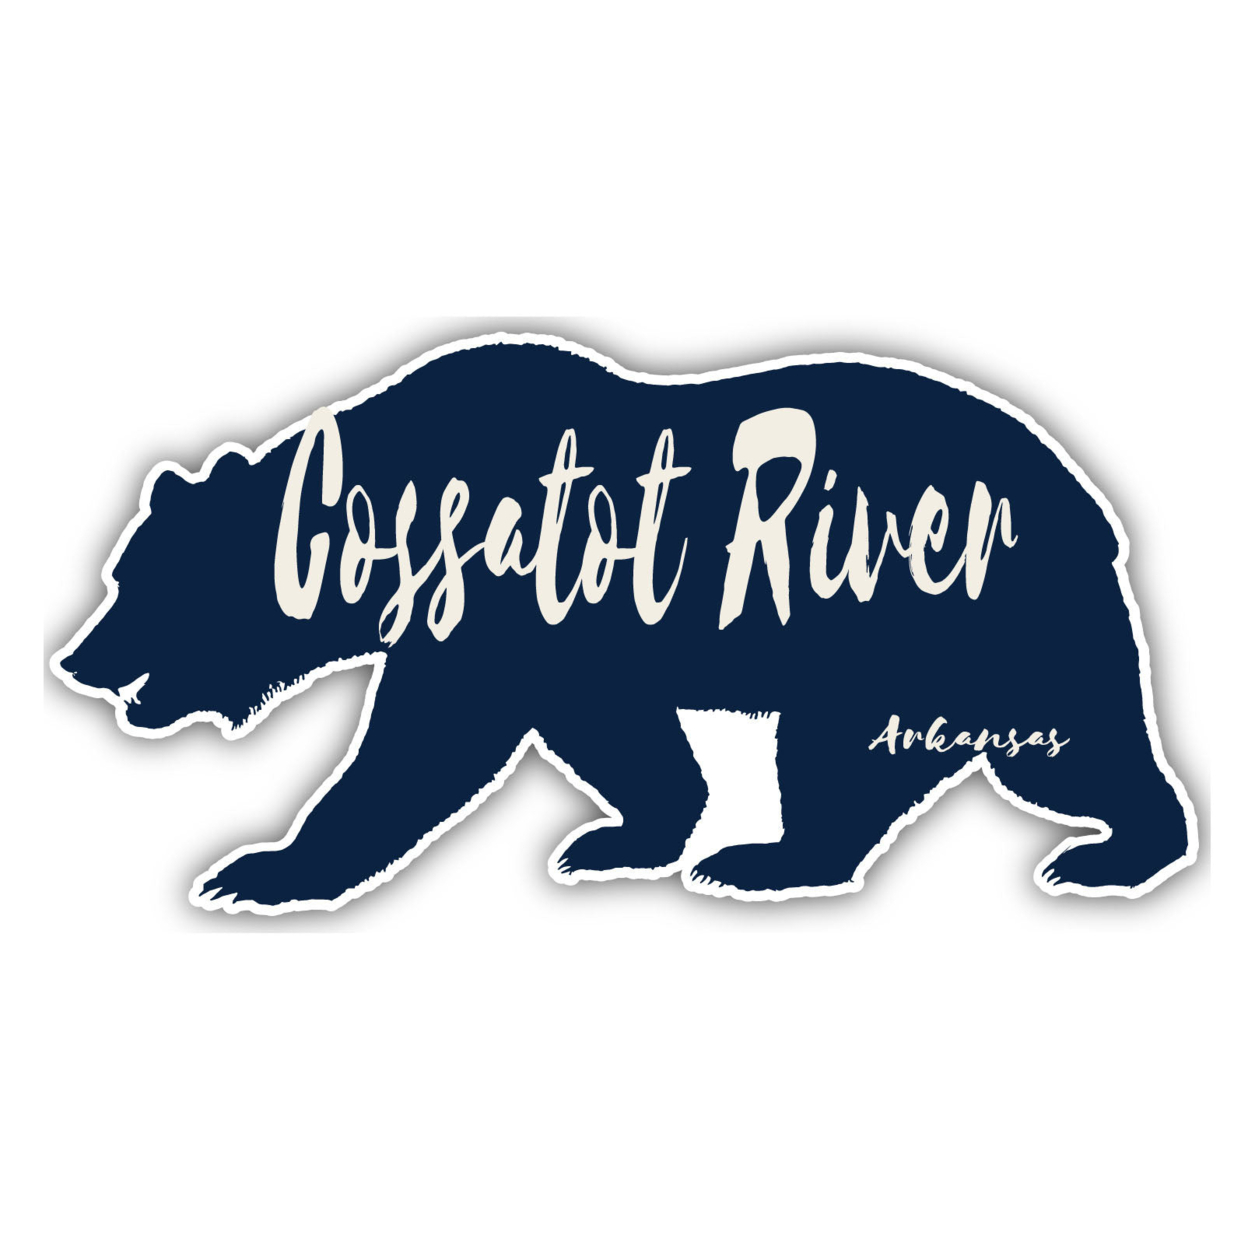 Cossatot River Arkansas Souvenir Decorative Stickers (Choose Theme And Size) - Single Unit, 6-Inch, Bear